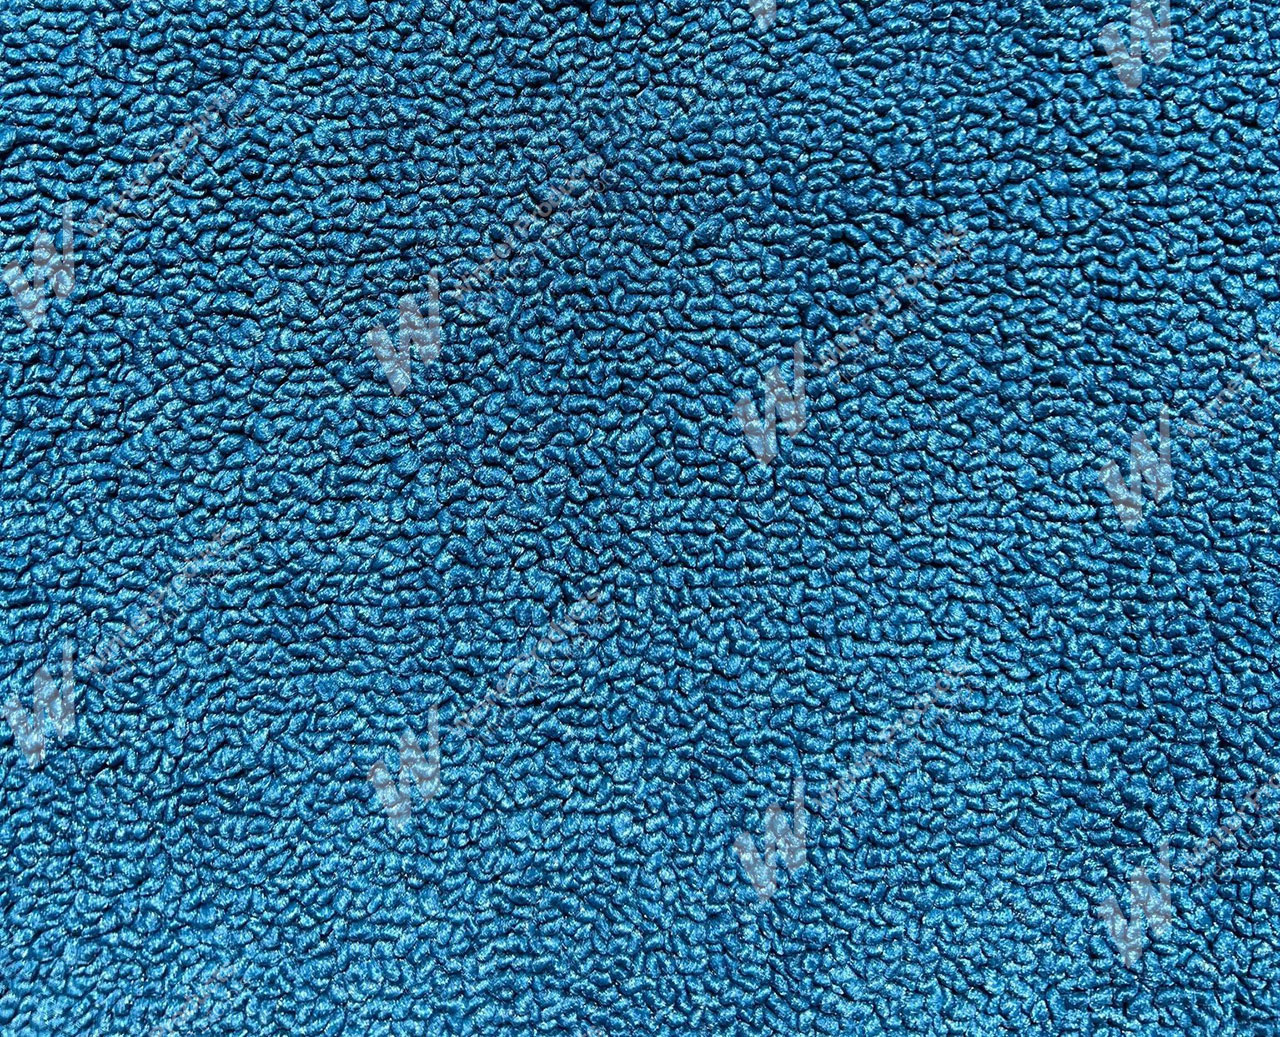 Holden Standard HR Standard Sedan E44 Dover Blue Carpet (Image 1 of 1)